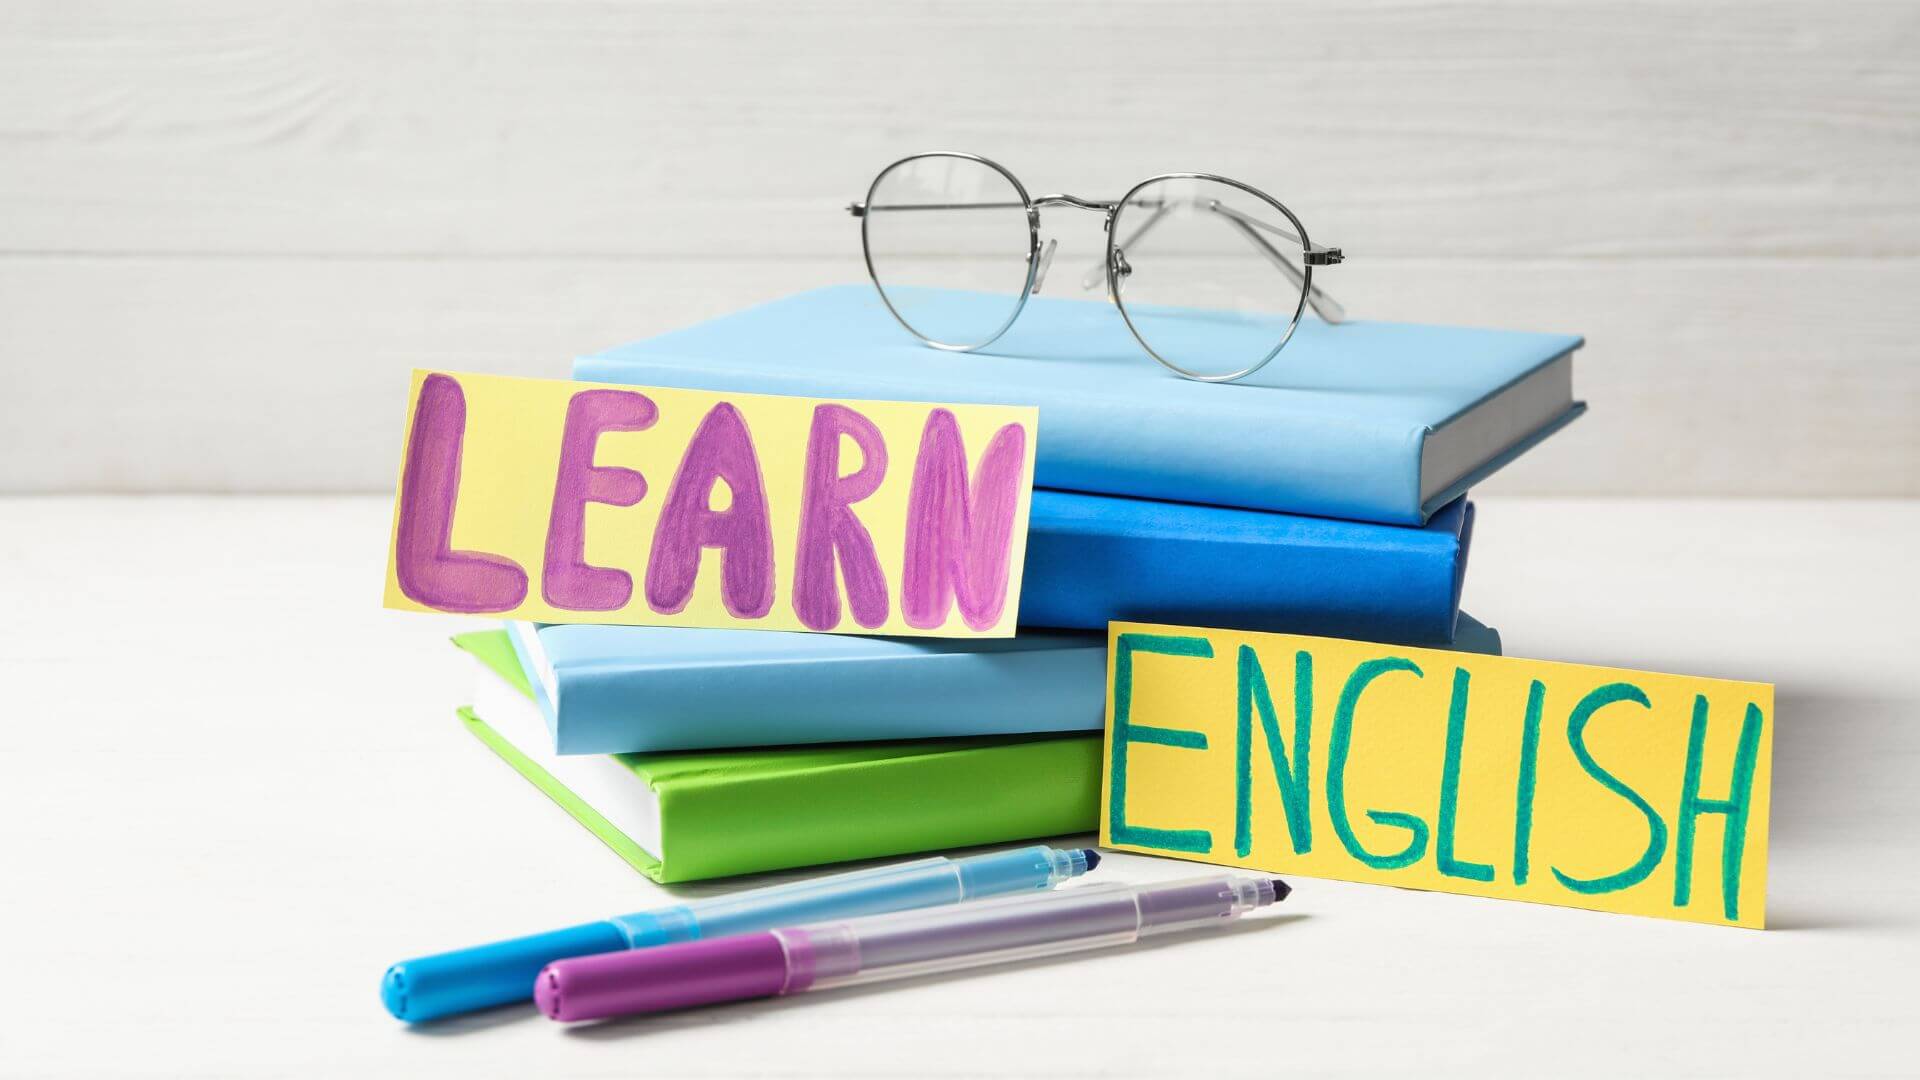 英語を学ぶ、英語が話せるようになる、英語学習、英語学習、英語習得